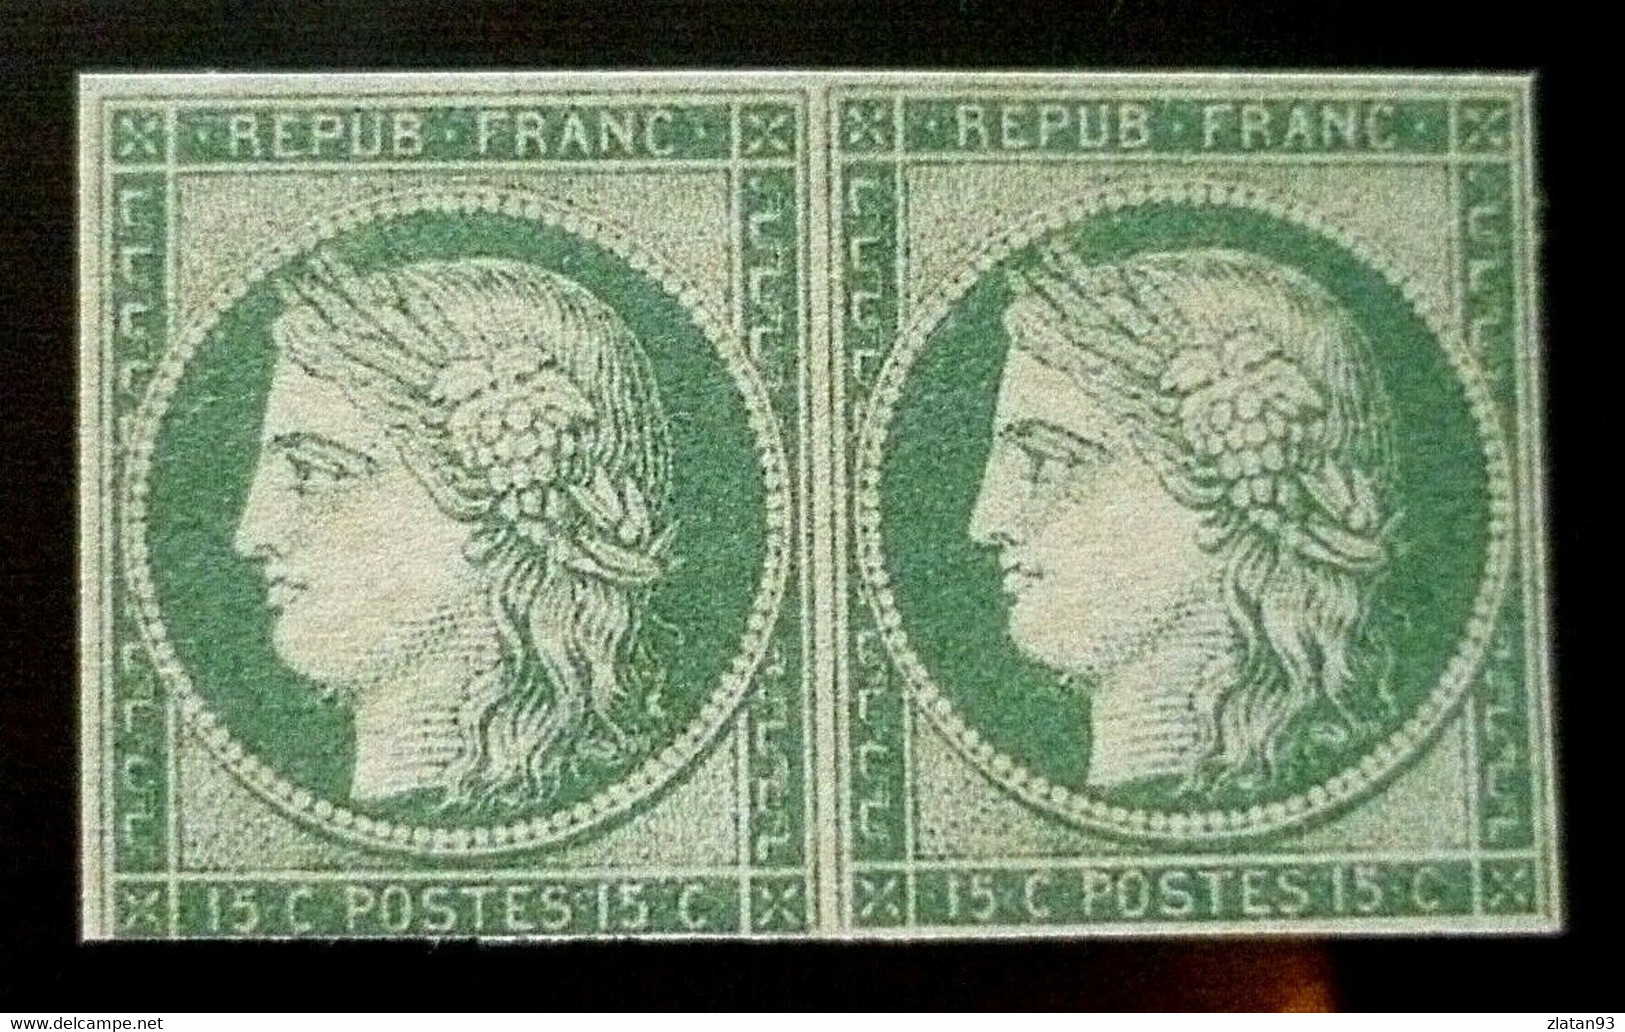 PAIRE CERES N°2b 15c Vert Foncé NEUF Sans GOMME Coté + 60000 Euro (REPRODUCTION) - 1849-1850 Cérès